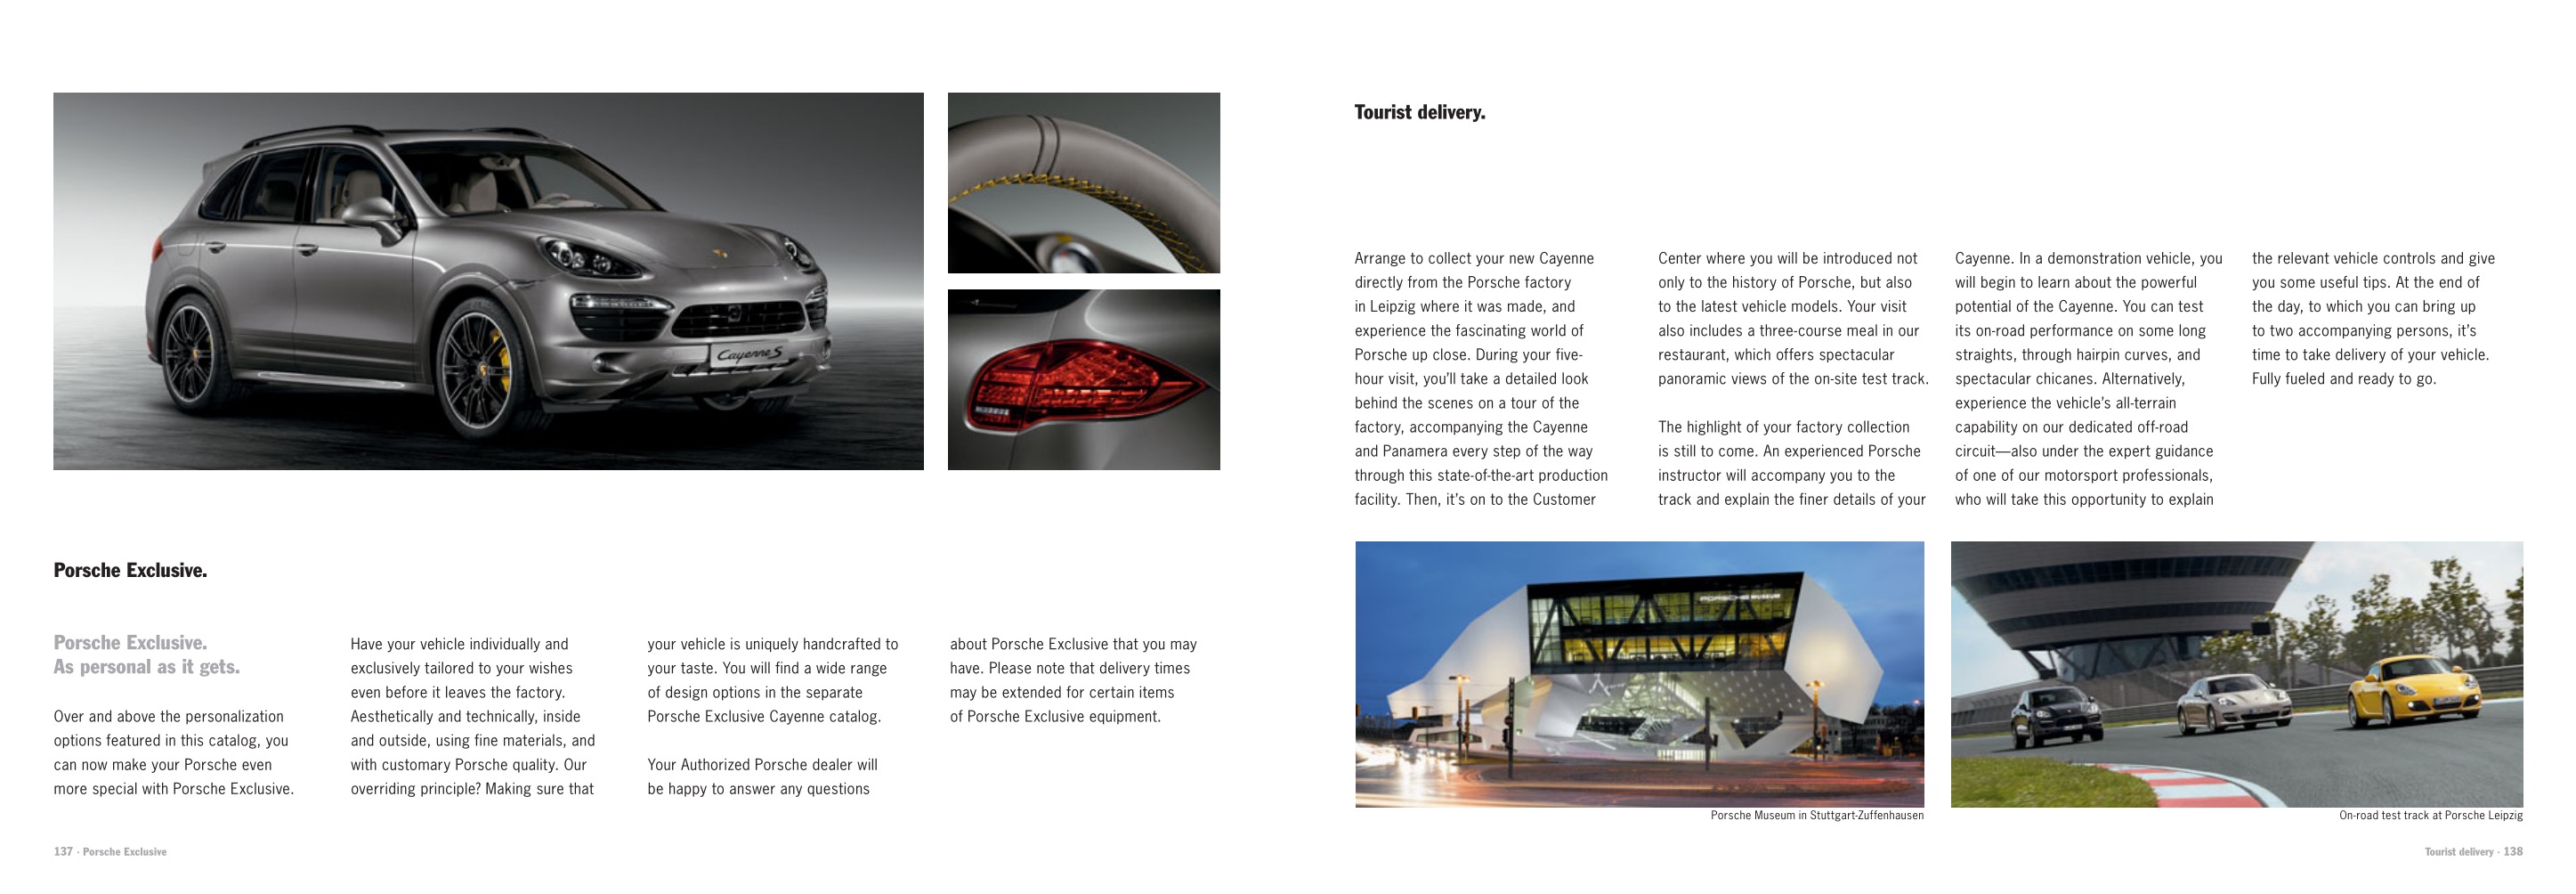 2013 Porsche Cayenne Brochure Page 27